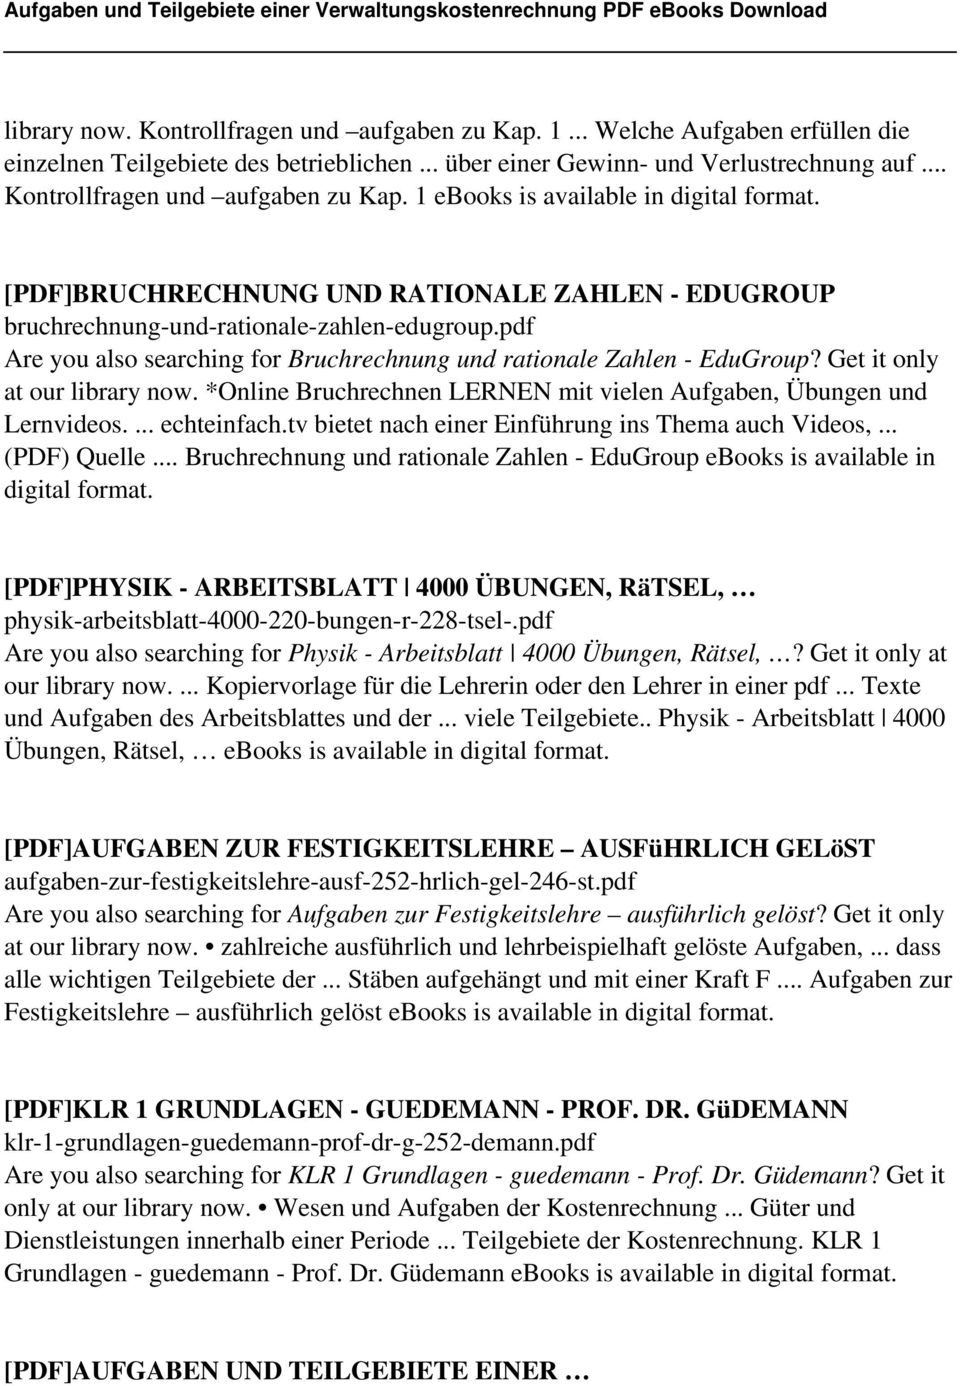 pdf Are you also searching for Bruchrechnung und rationale Zahlen - EduGroup? Get it only at our library now. *Online Bruchrechnen LERNEN mit vielen Aufgaben, Übungen und Lernvideos.... echteinfach.